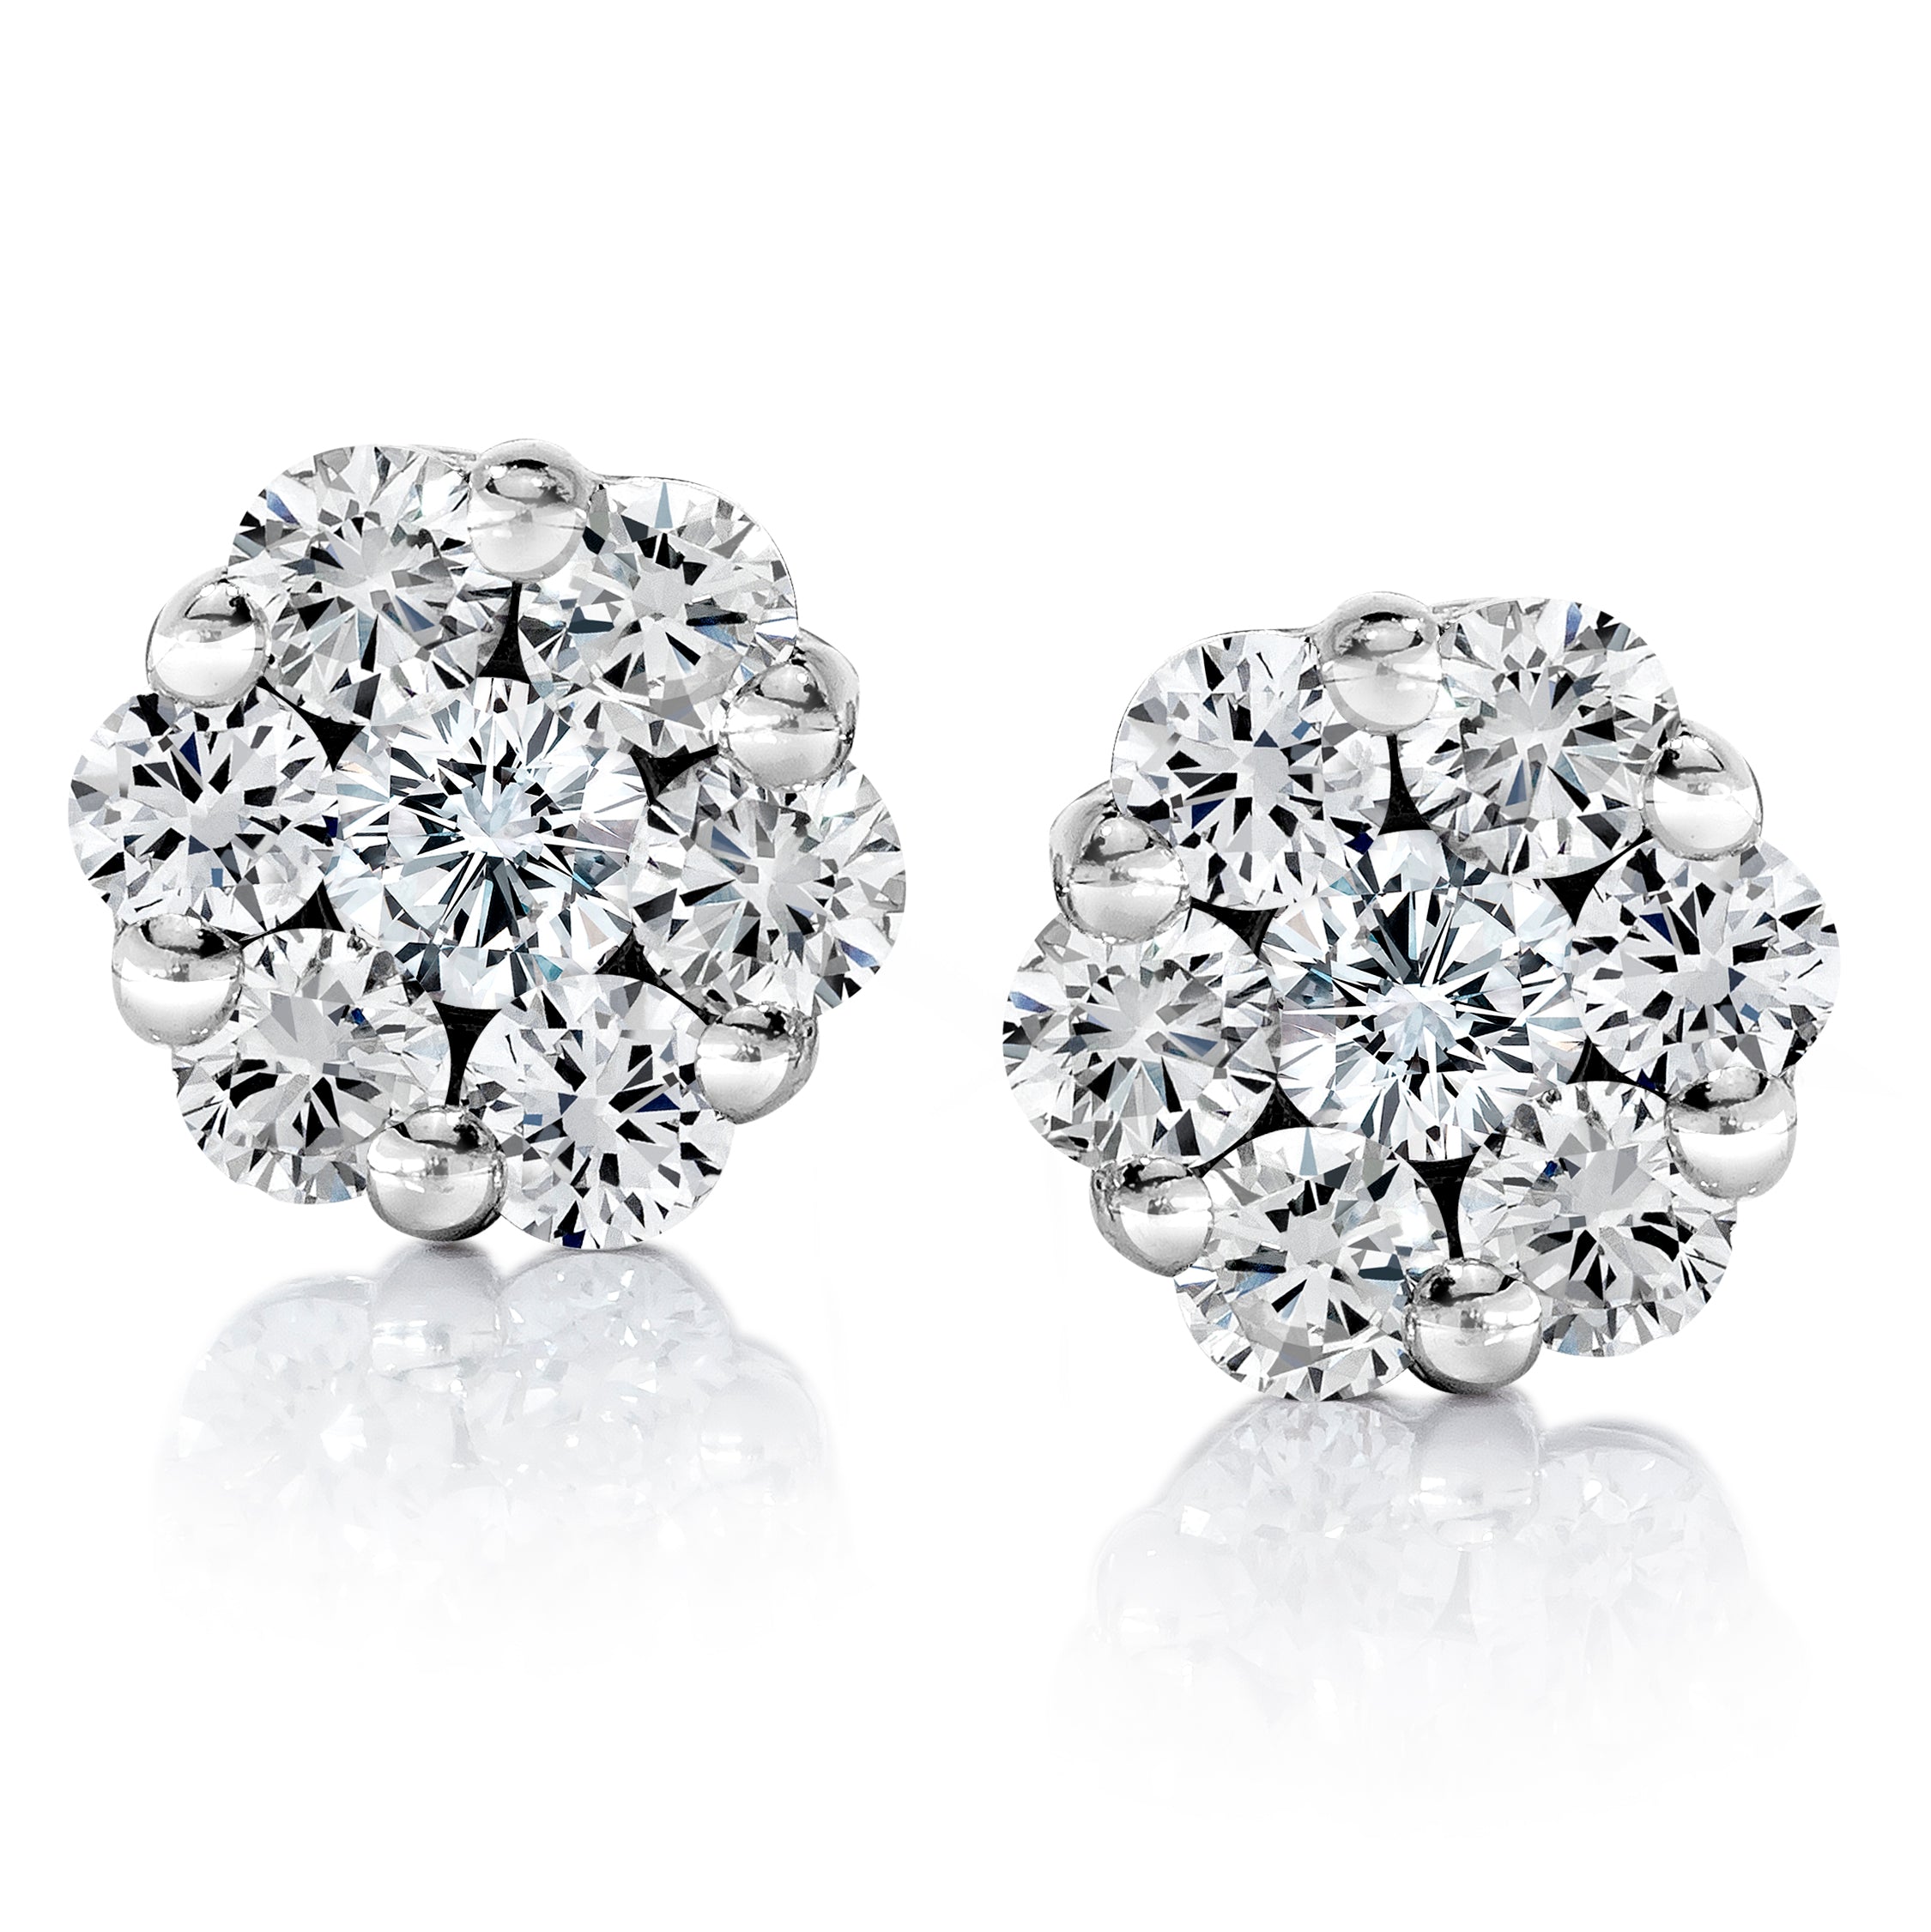 Cluster Diamond Earrings set in 14k White Gold – Diamonds